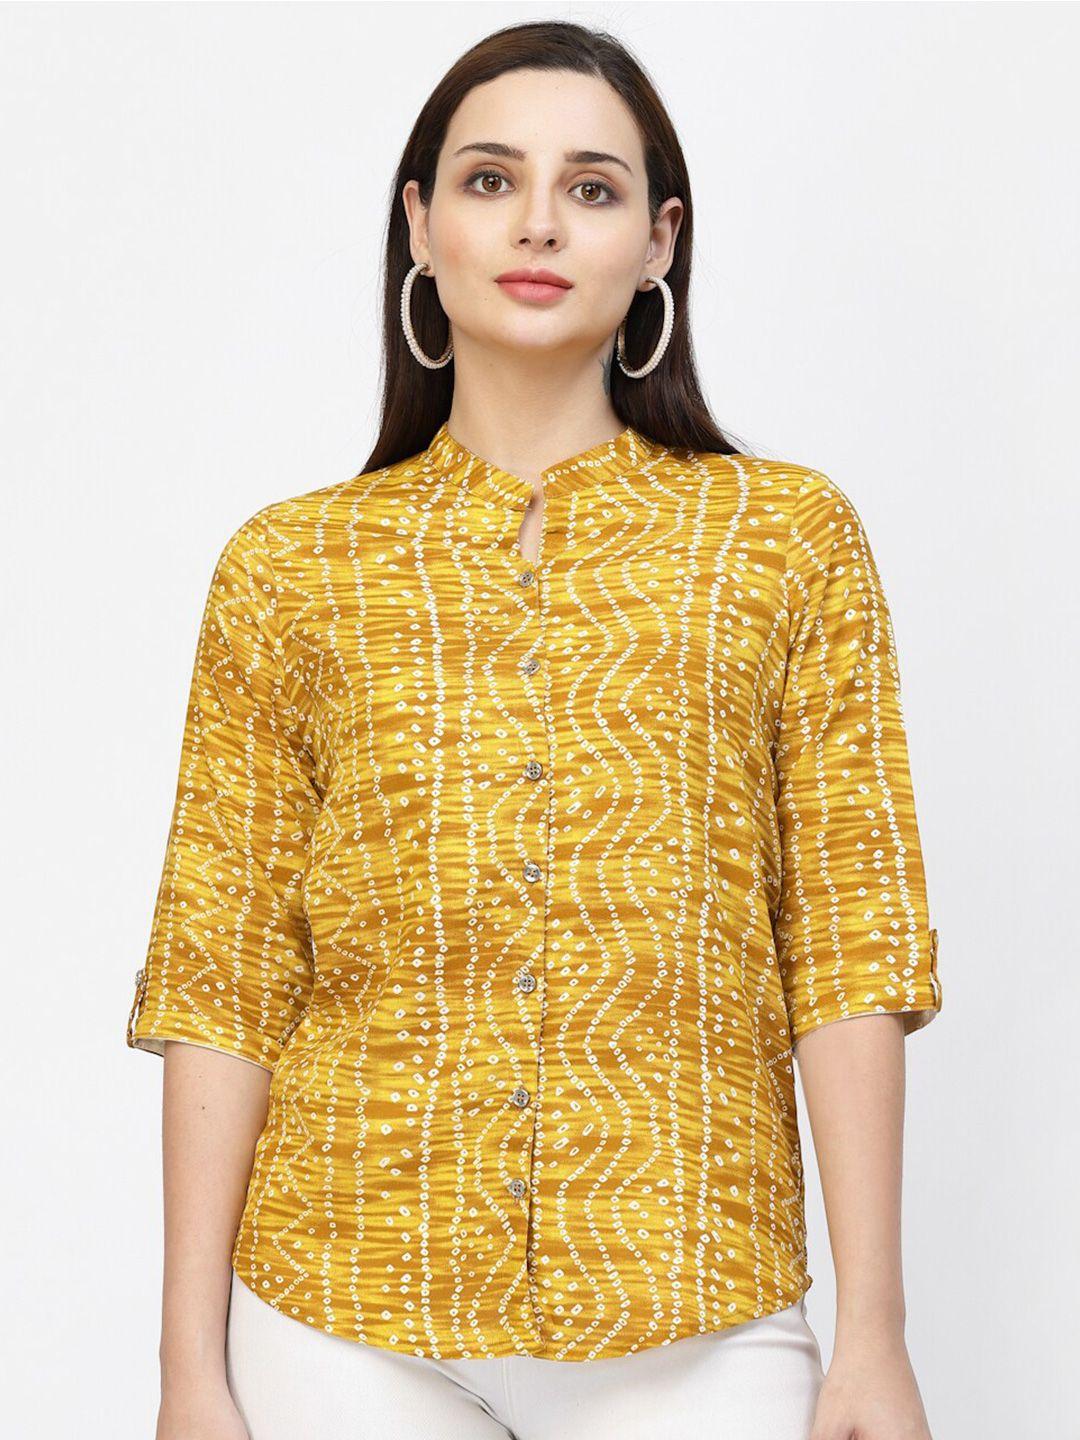 vastraa fusion bandhani printed mandarin collar shirt style top